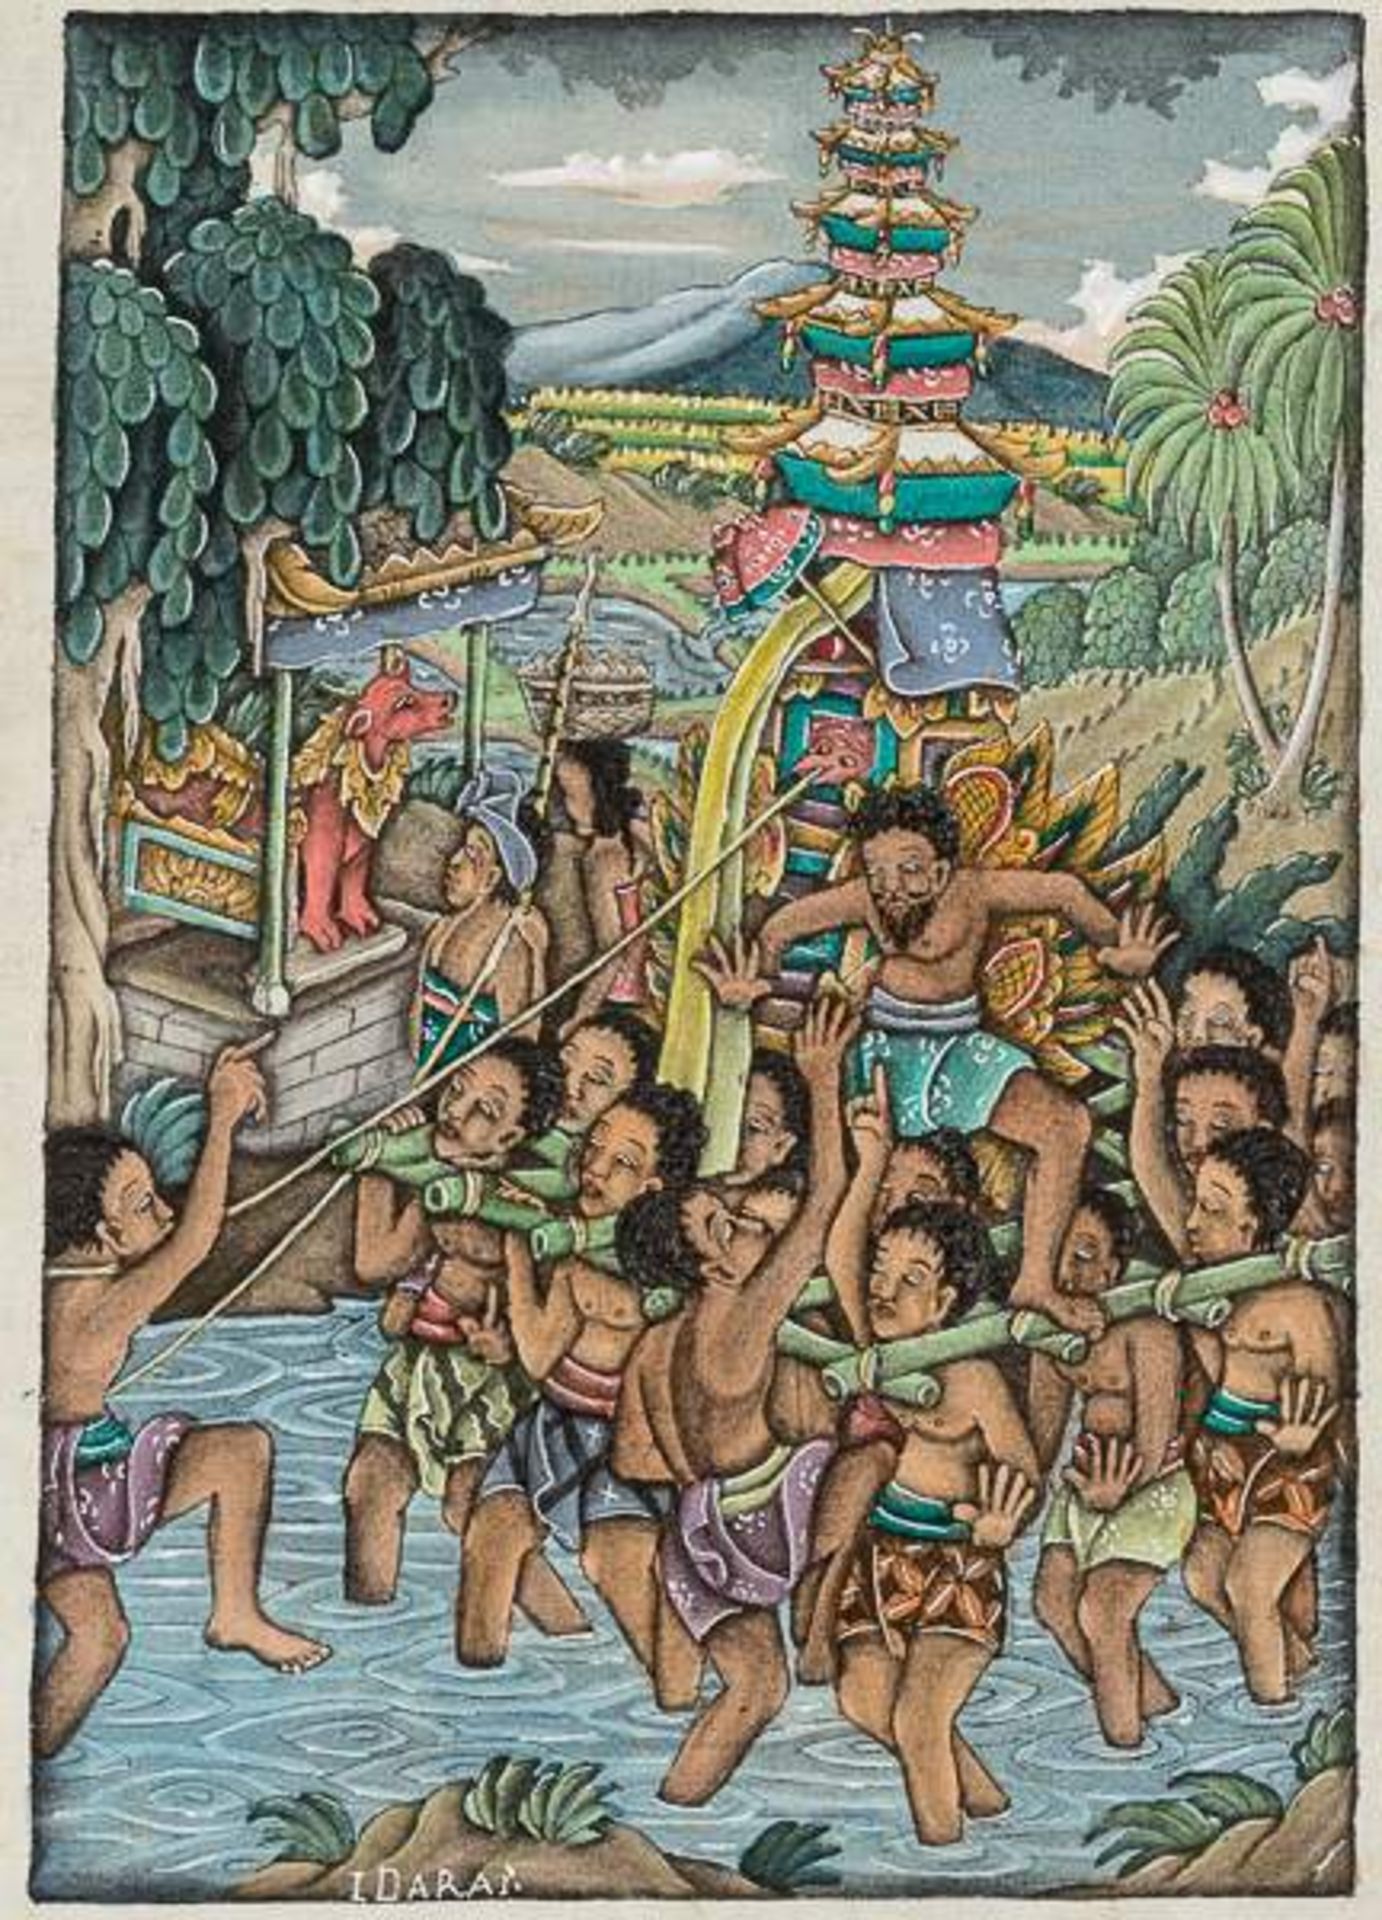 NACKTES MÄDCHEN UND JUNGER FISCHER Farbige Malerei auf Leinwand. Indonesien, Bali, 20. Jh. Der junge